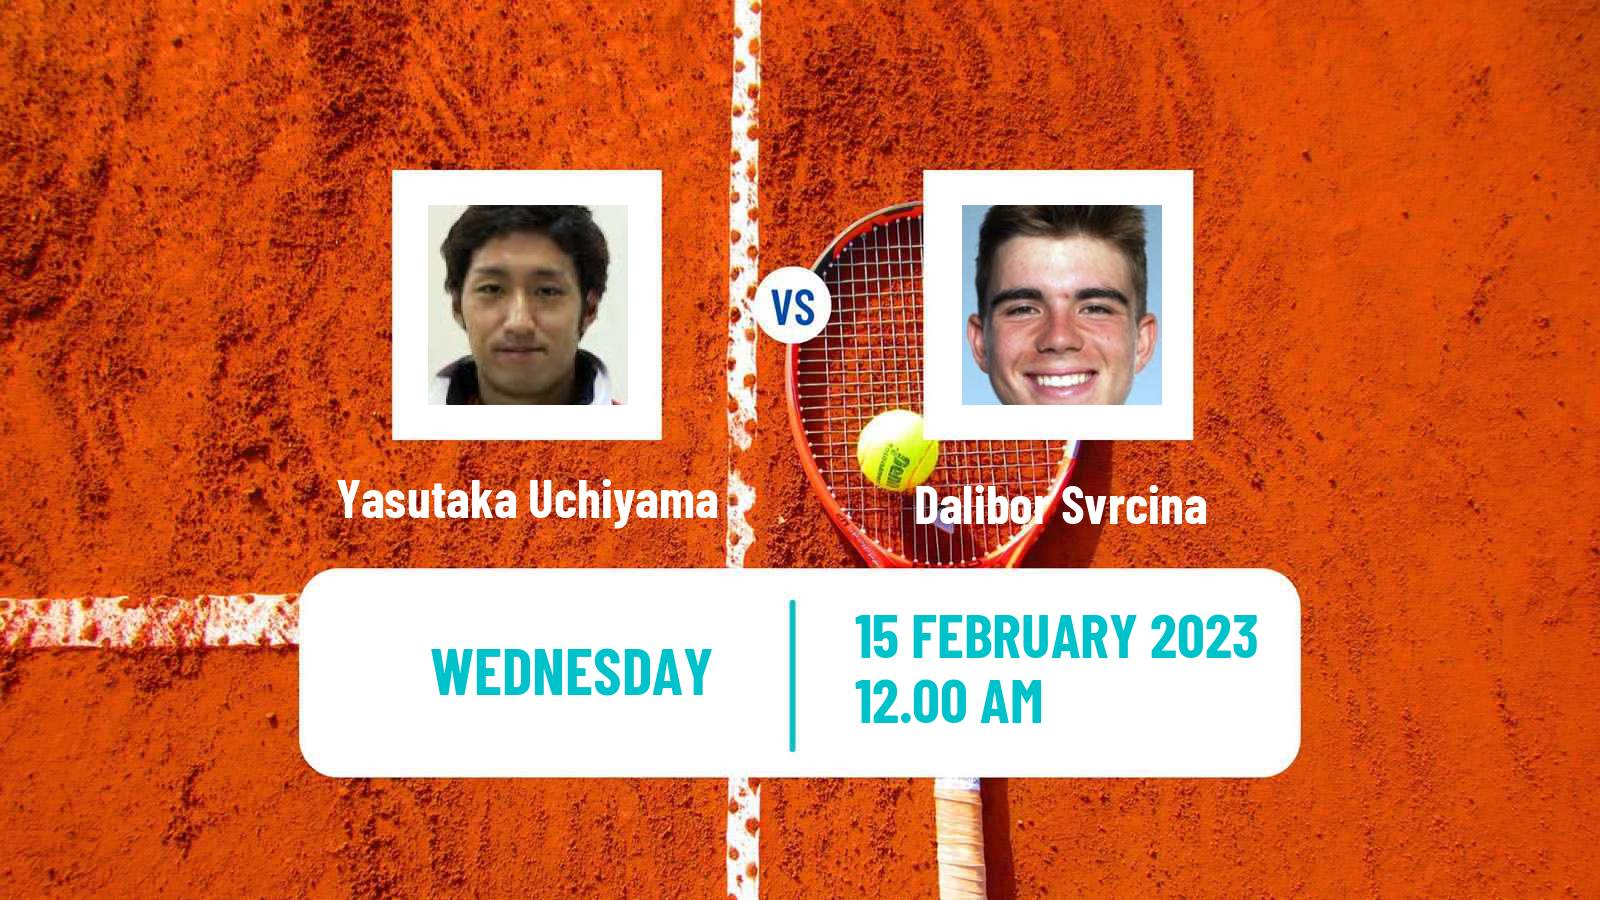 Tennis ATP Challenger Yasutaka Uchiyama - Dalibor Svrcina